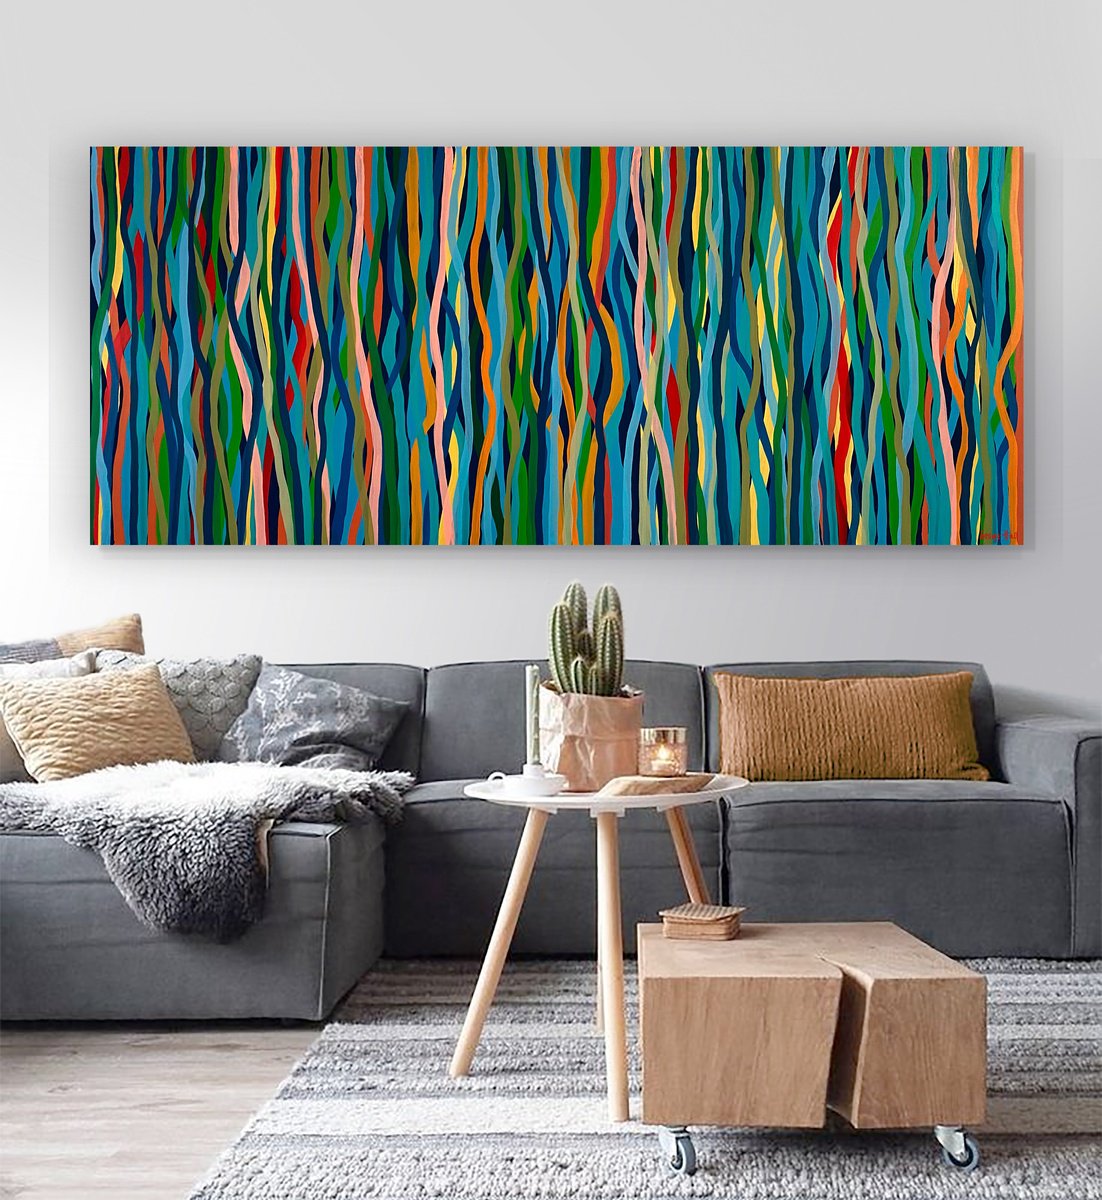 Groove Safari- 200 x 85cm acrylic on canvas by George Hall